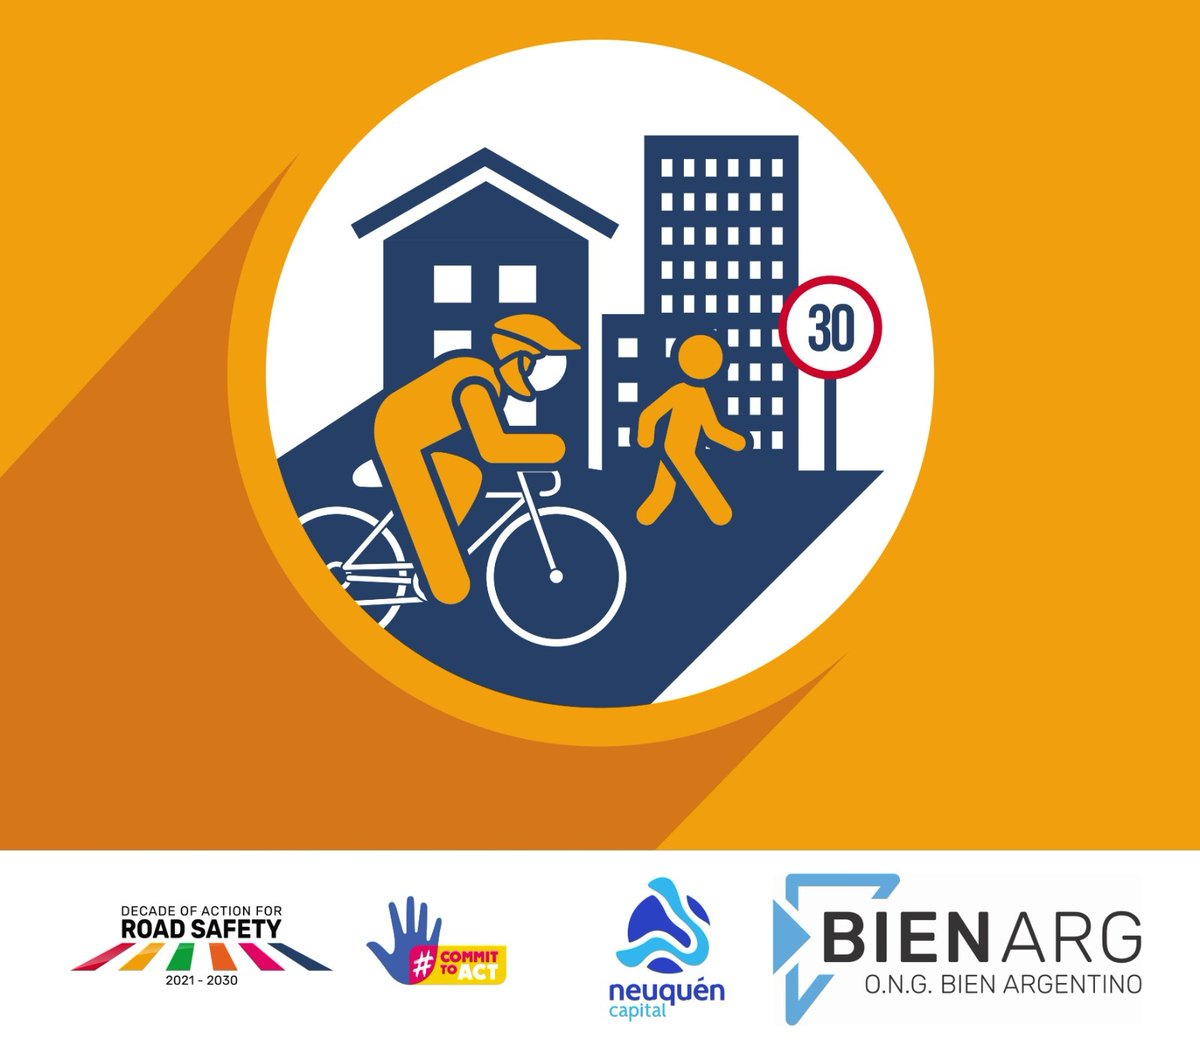 ✅️La movilidad es parte fundamental para garantizar calidad de vida a los ciudadanos. Entornos saludables y seguros benefician y estimulan a la vida saludable La seguridad vial es fundamental en la configuración de estos  entornos urbanos #CommitToAct @RoadSafetyNGOs @UNRSC